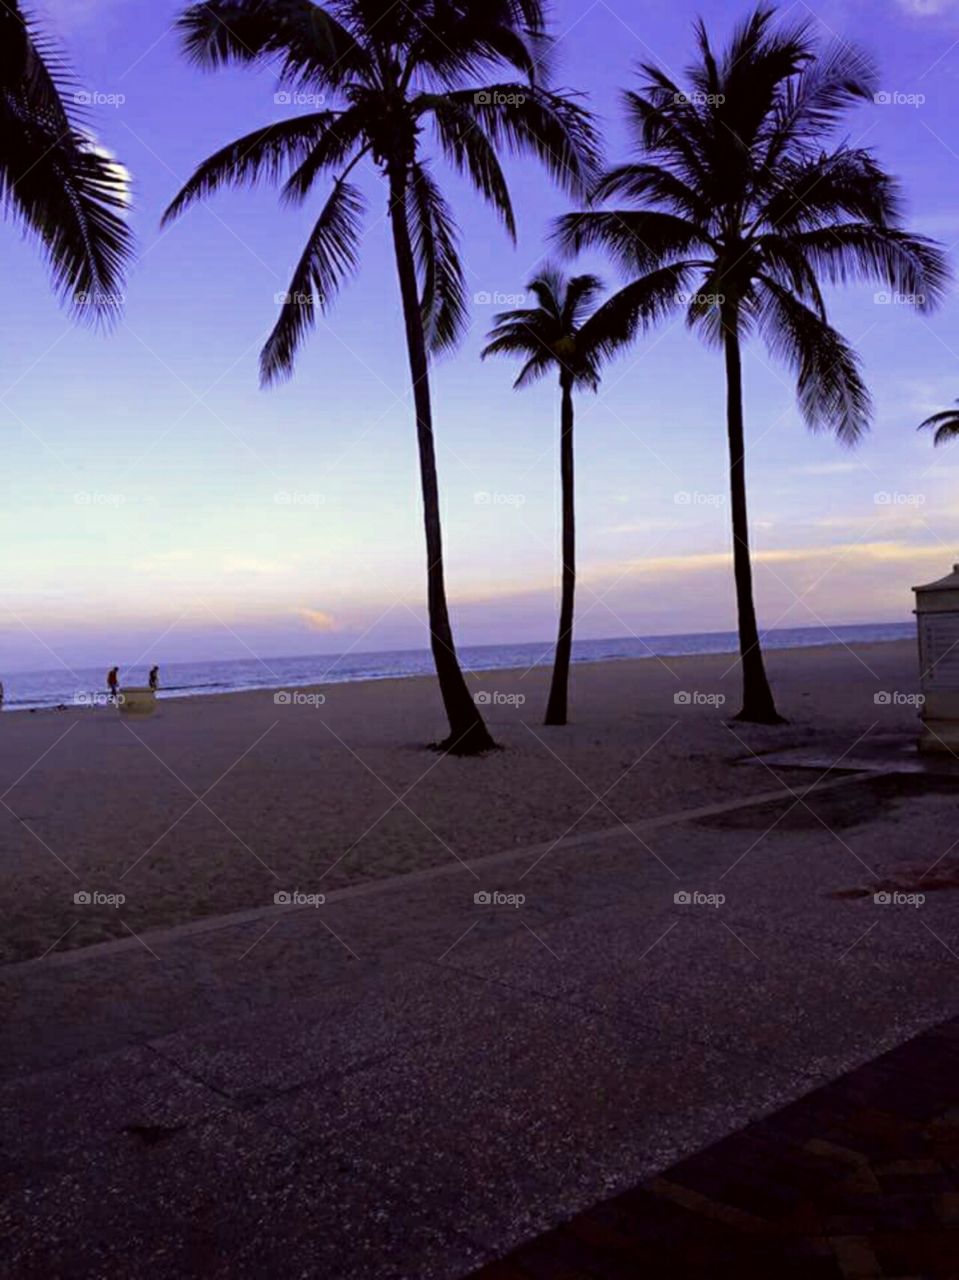 Beach palm trees